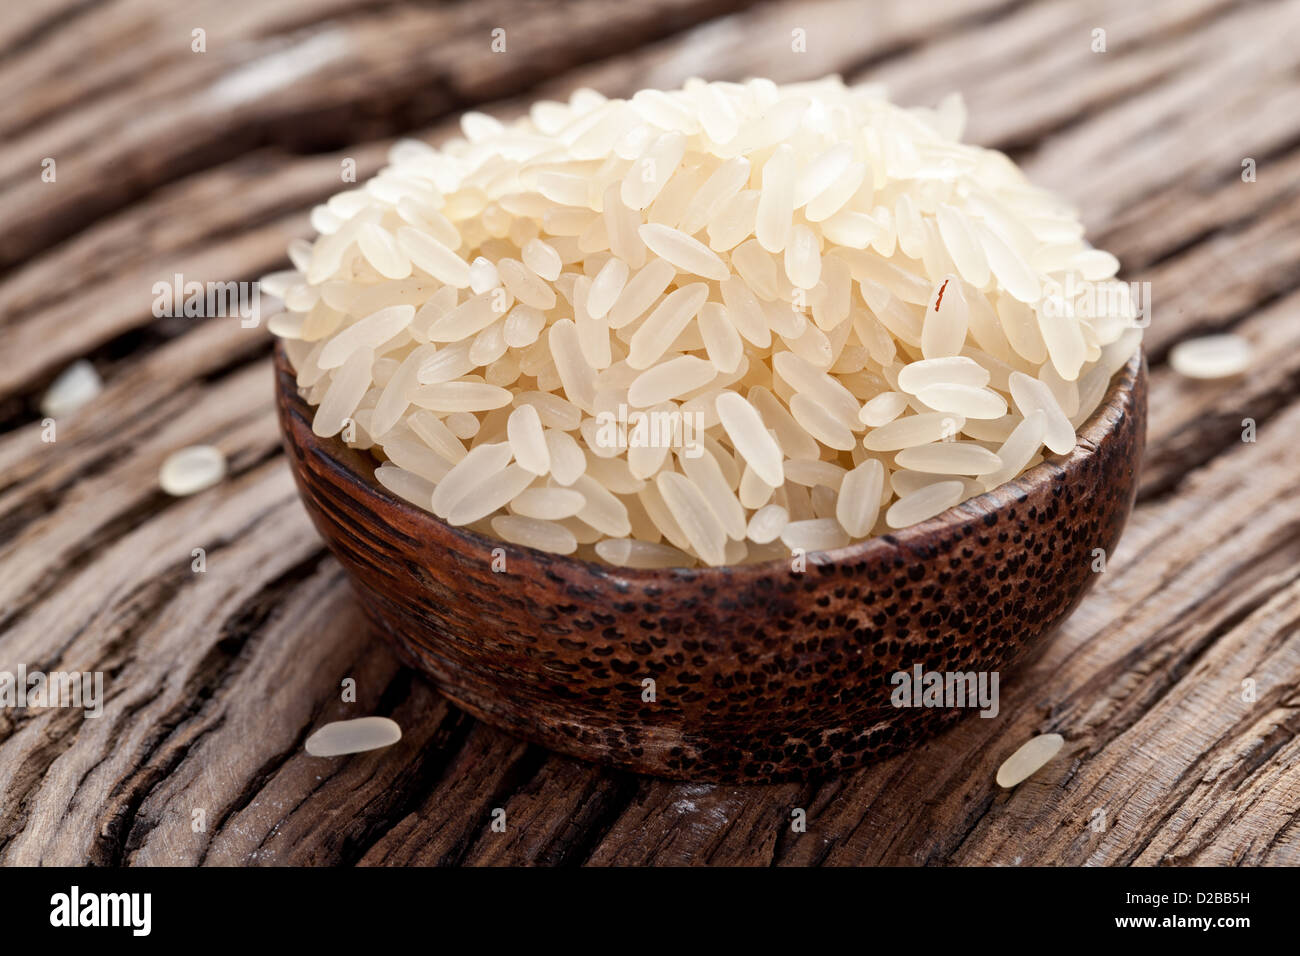 Ungekochten Reis in einer Schüssel auf einem dunklen Holztisch. Stockfoto